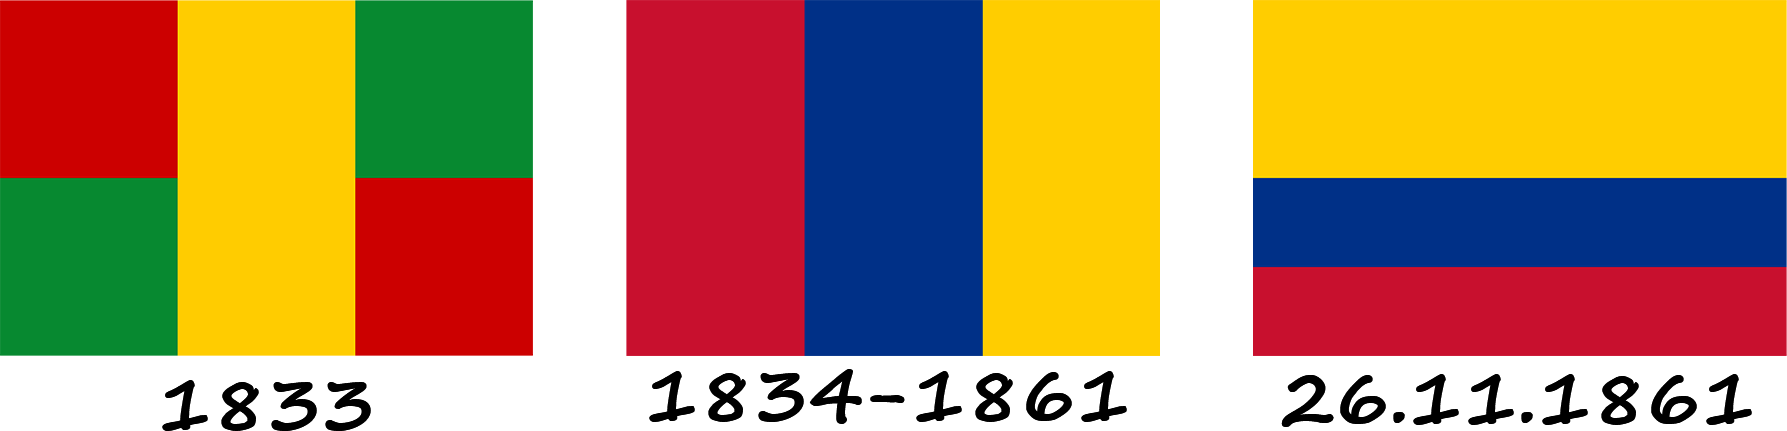 Historia de la bandera de Colombia